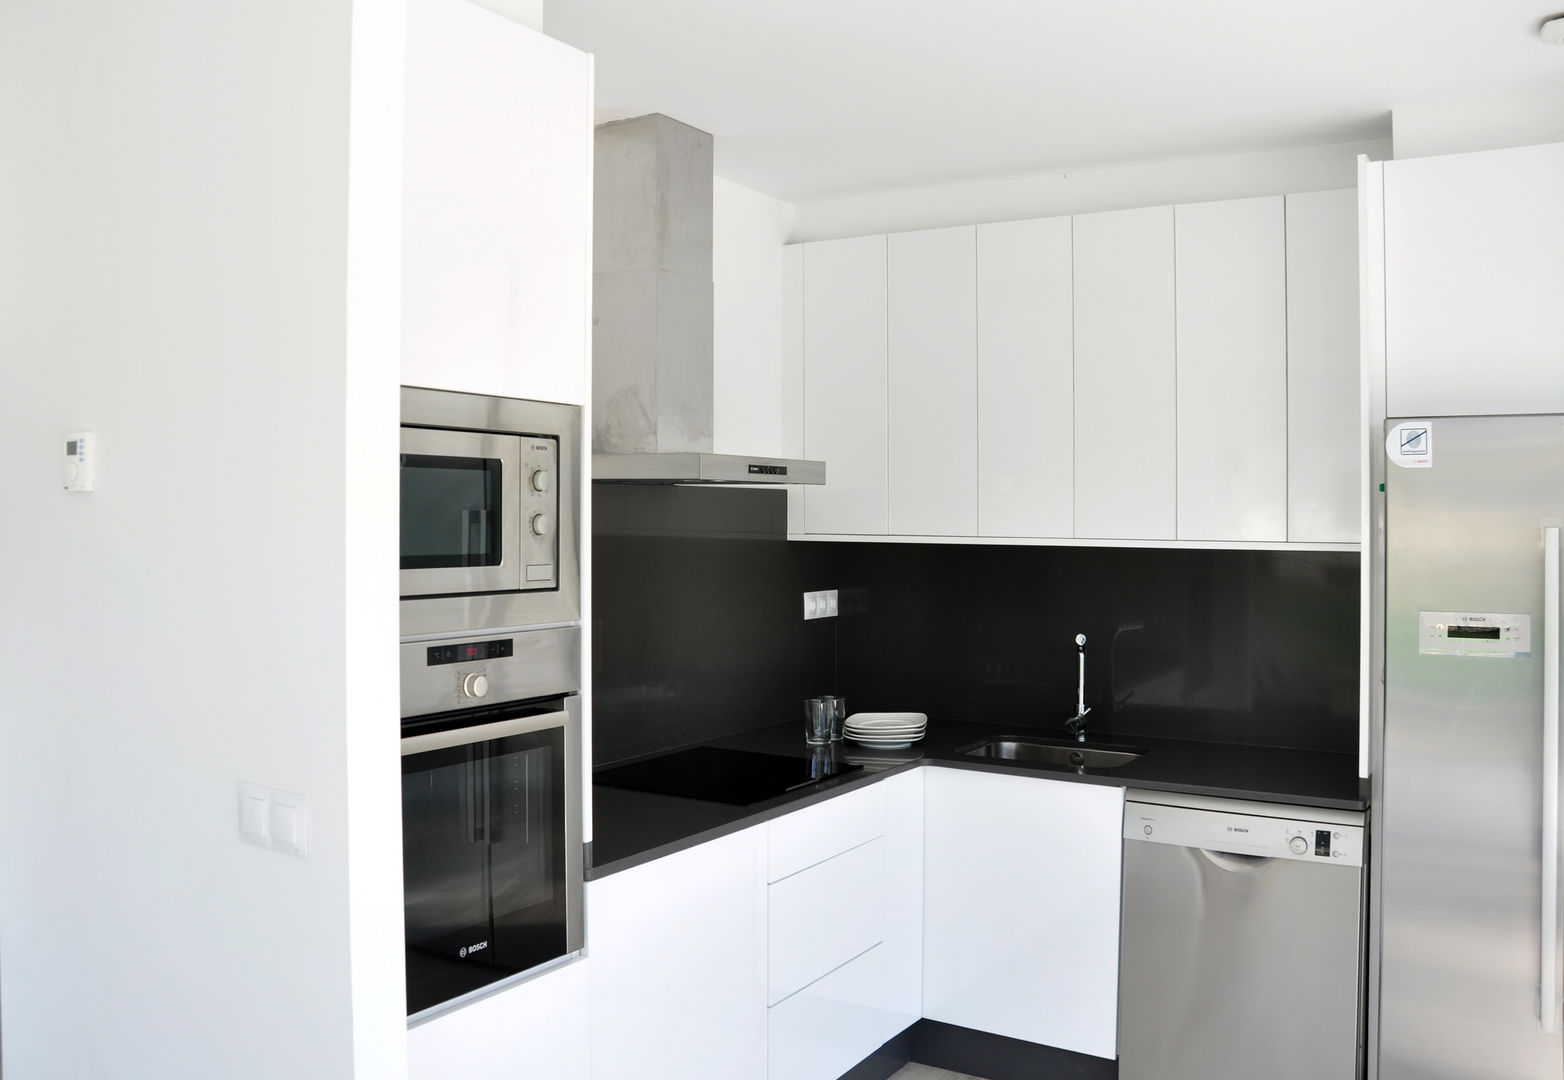 Casa prefabricada Cube 100 m2 - Cocina homify Cocinas de estilo moderno